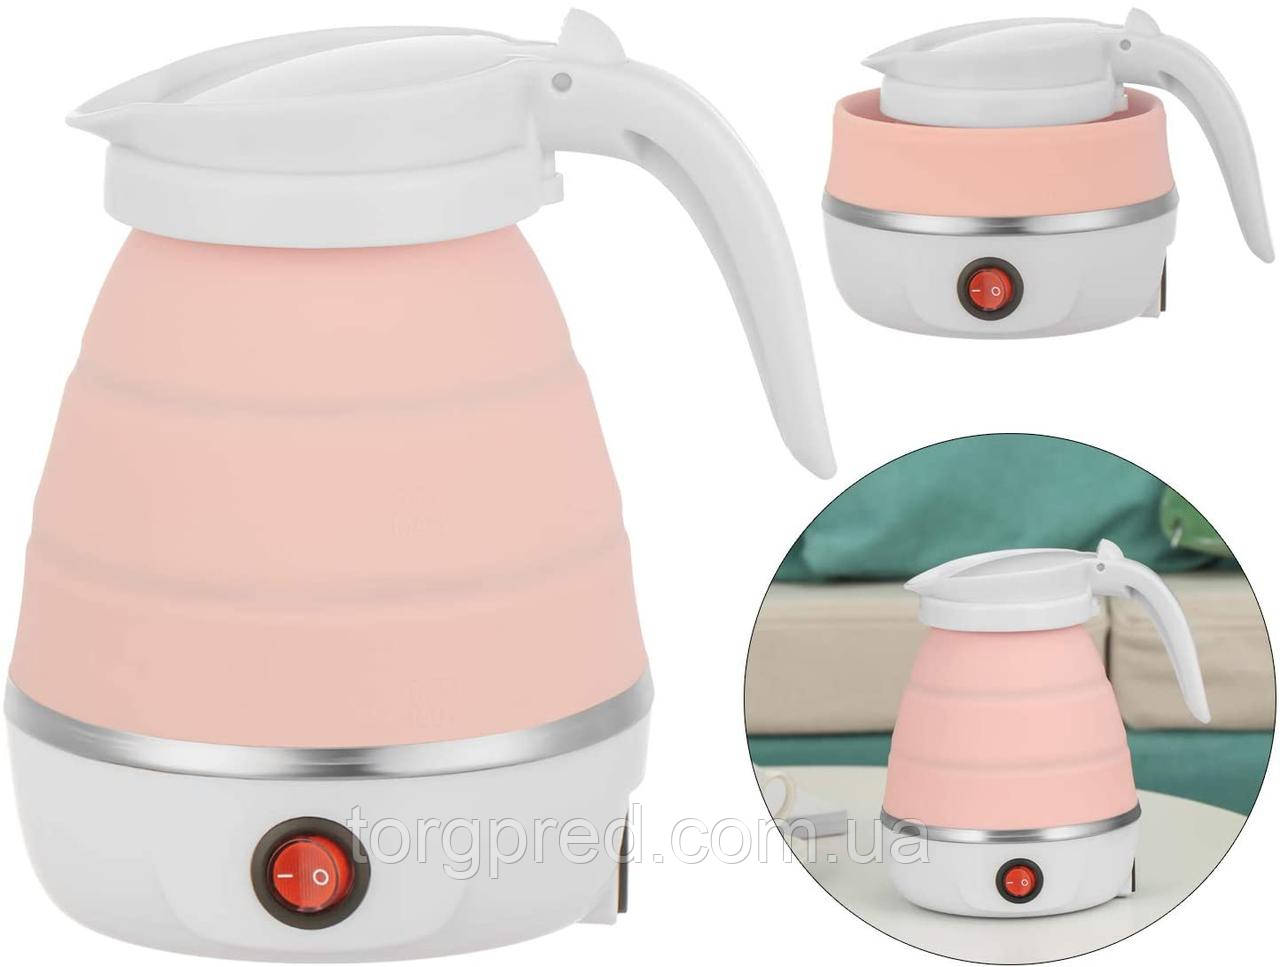 

Электрочайник маленький Folding electric kettle YS-2008, Розовый дорожный чайник электрический на 600 мл (ST)